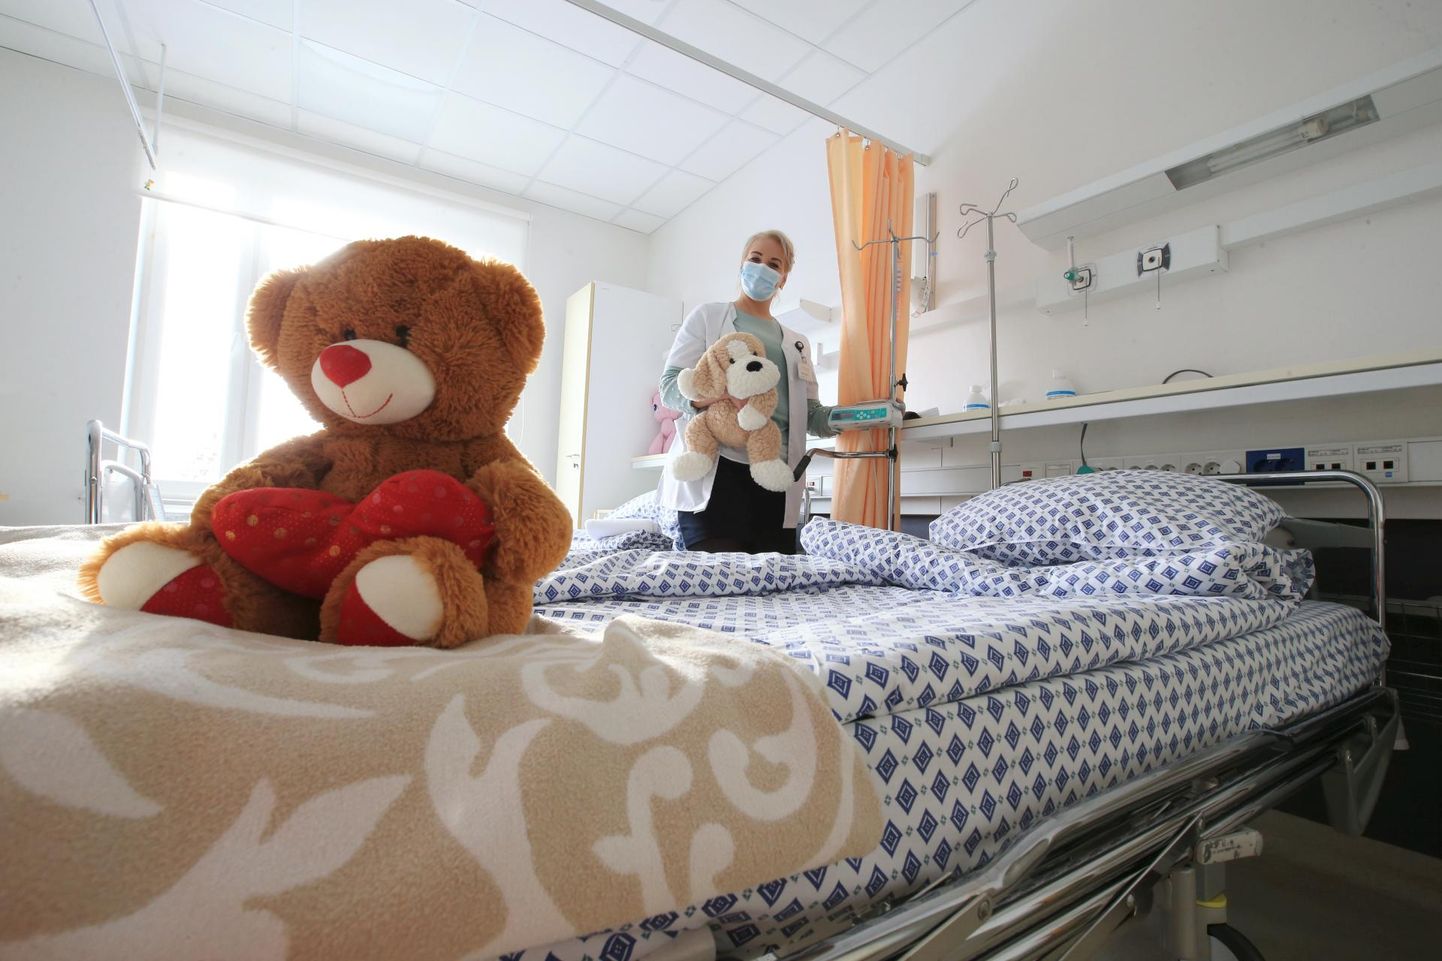 Hematoloogia-onkoloogia kliiniku ülemõde Kaire Jugar näitas eile tühja palatit, mis oli väikse patsiendi vastuvõtmiseks valmis. Sagedasti jääb ka ema lapse kõrvale voodisse.